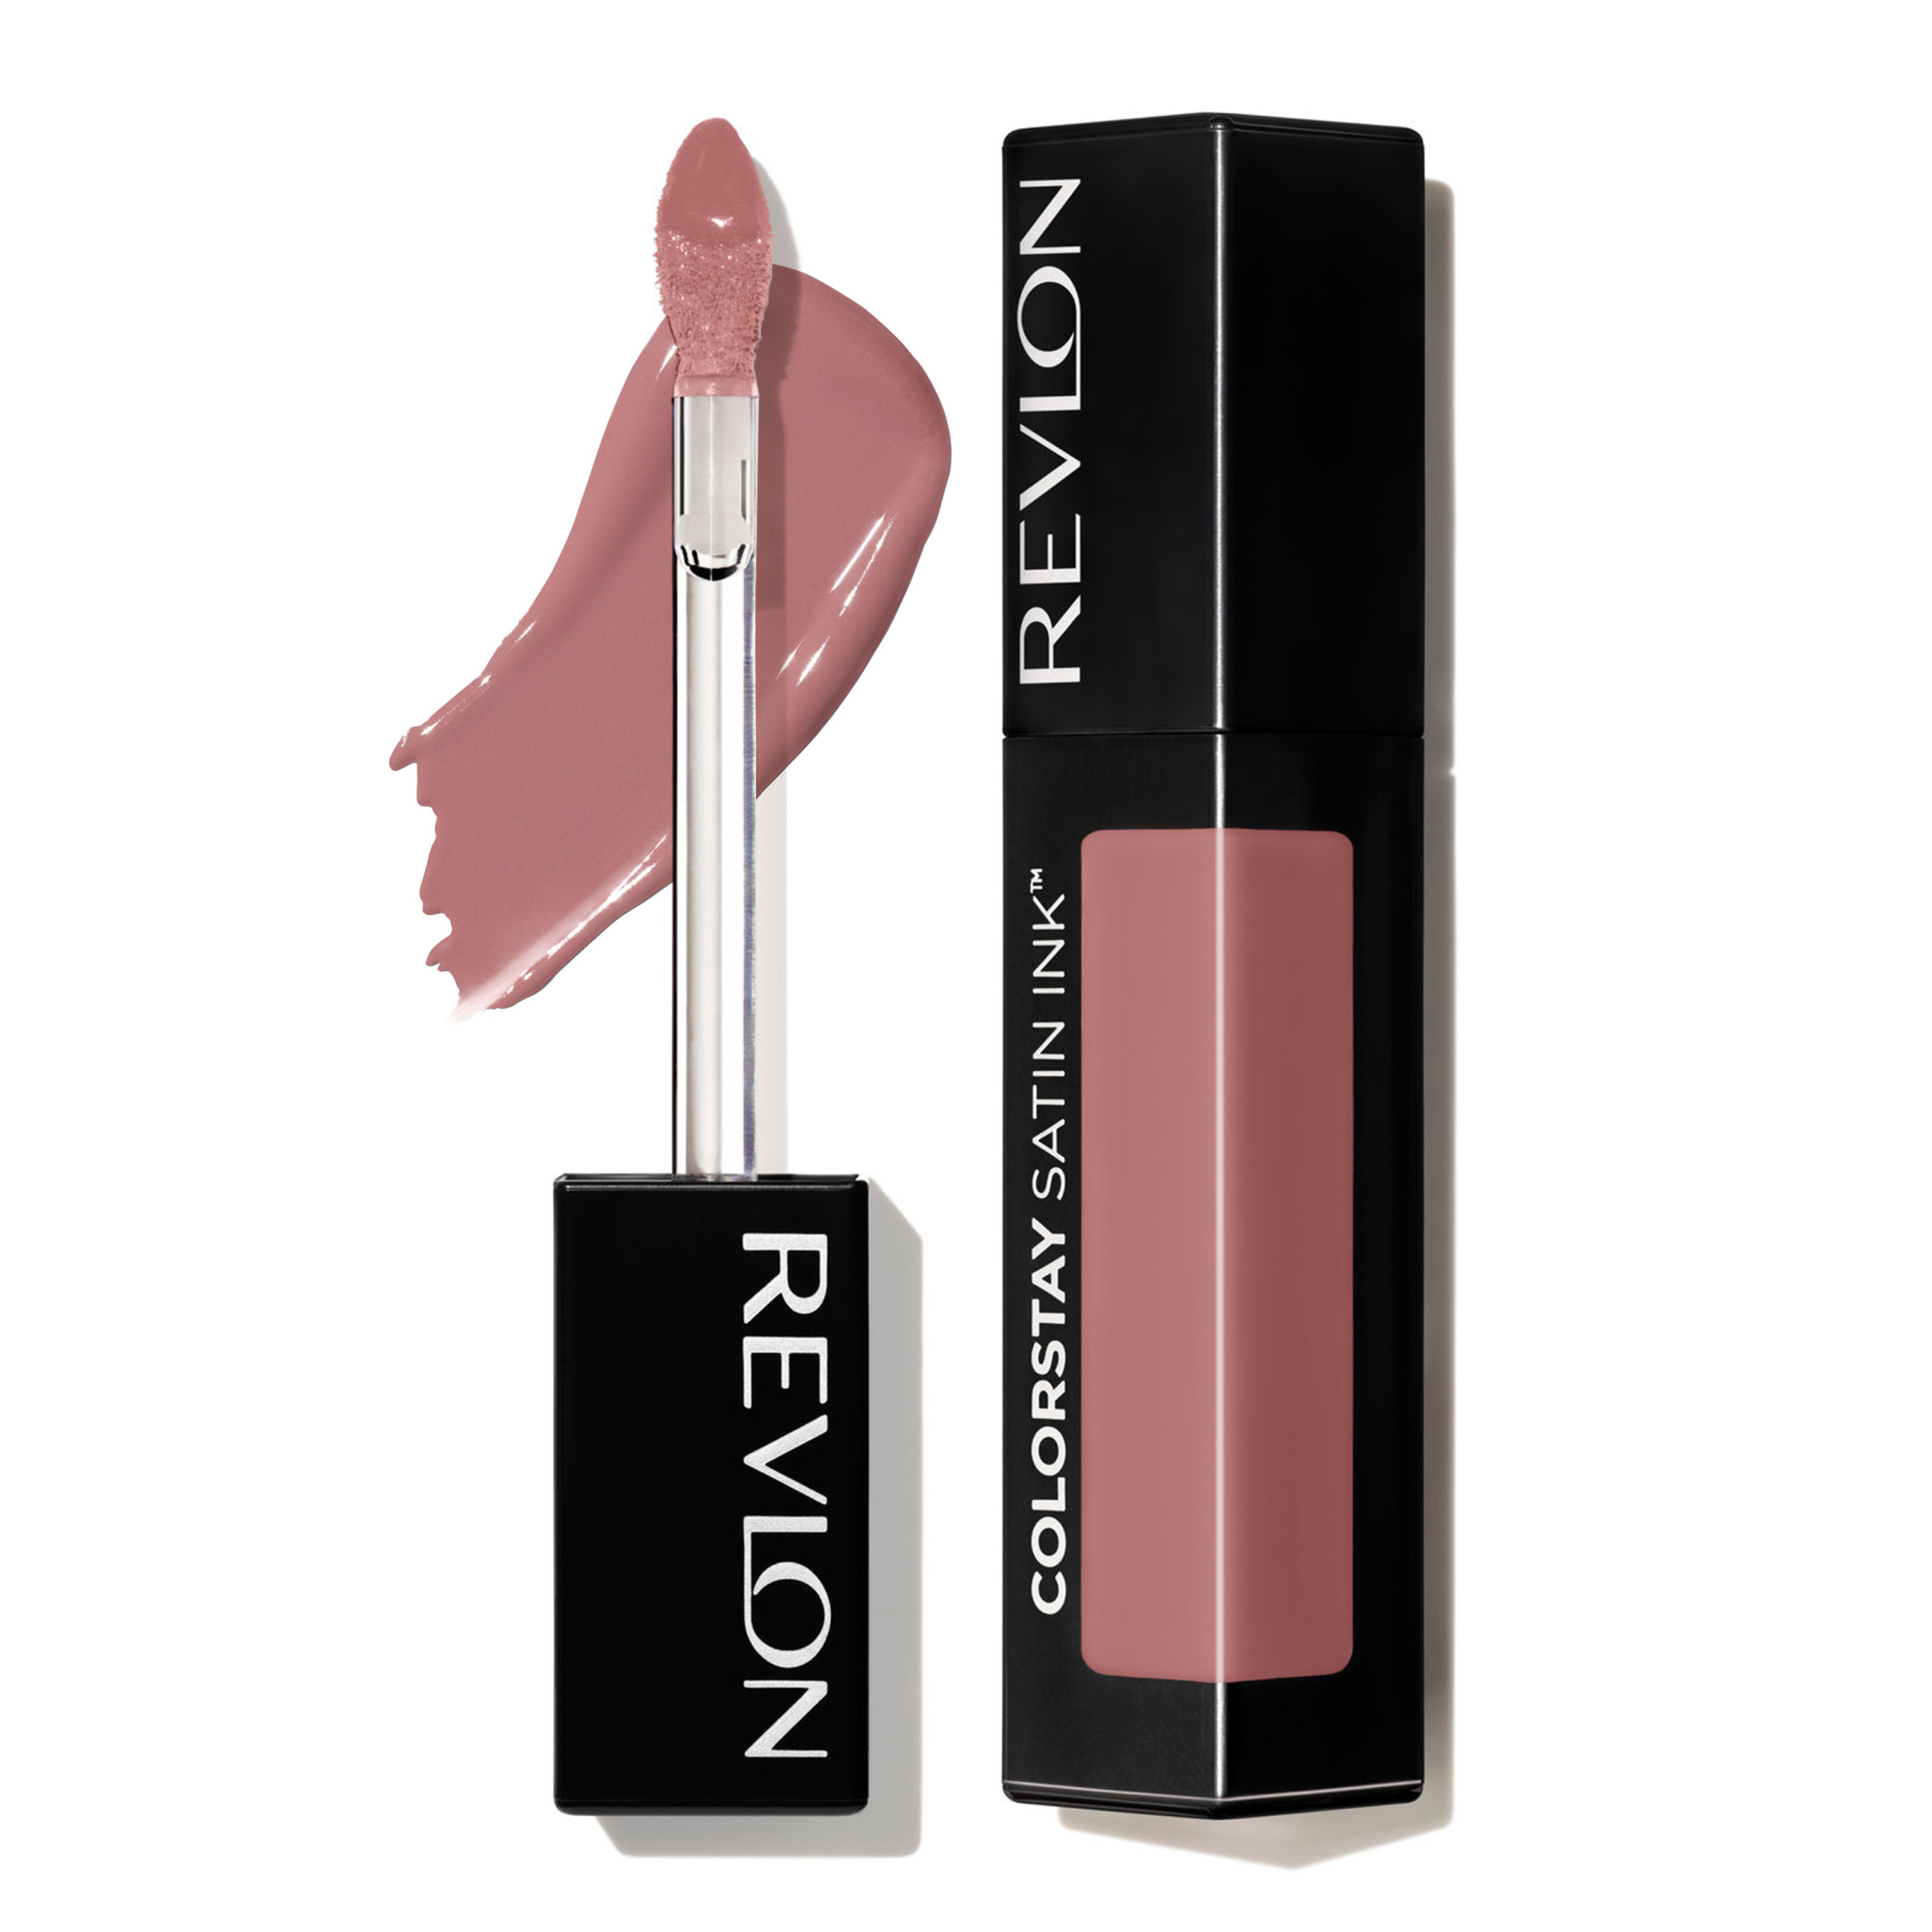 Revlon ColorStay Satin Ink Long Lasting Lipstick with Vitamin E, 007 Partner in Crime, 0.17 fl. Oz - image 1 of 11